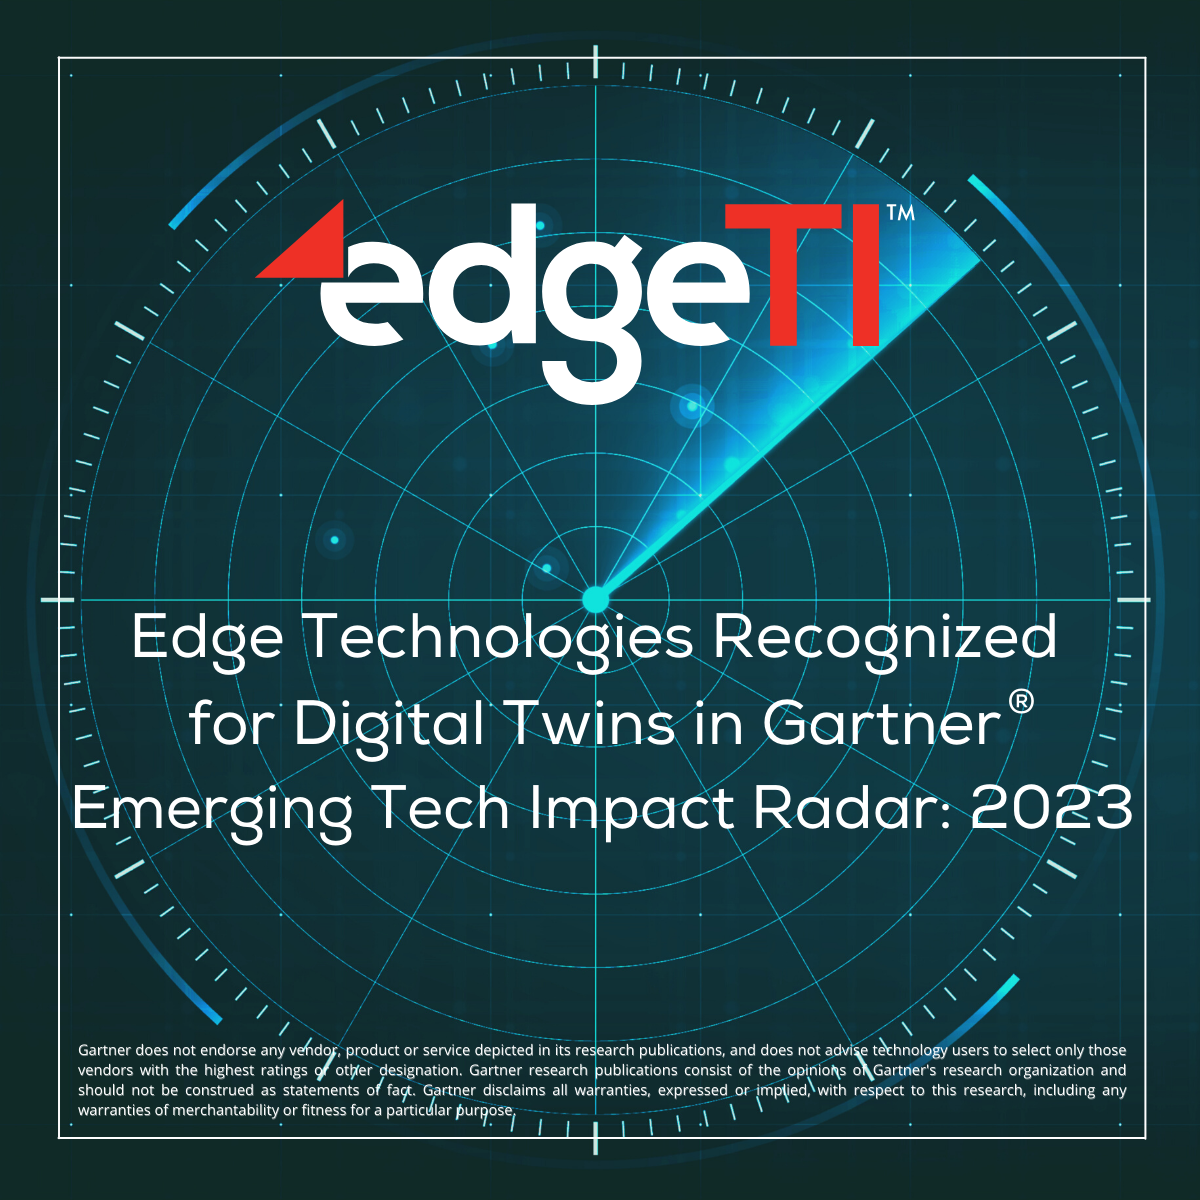 Gartner Tech Radar Recognizes Edge Technologies